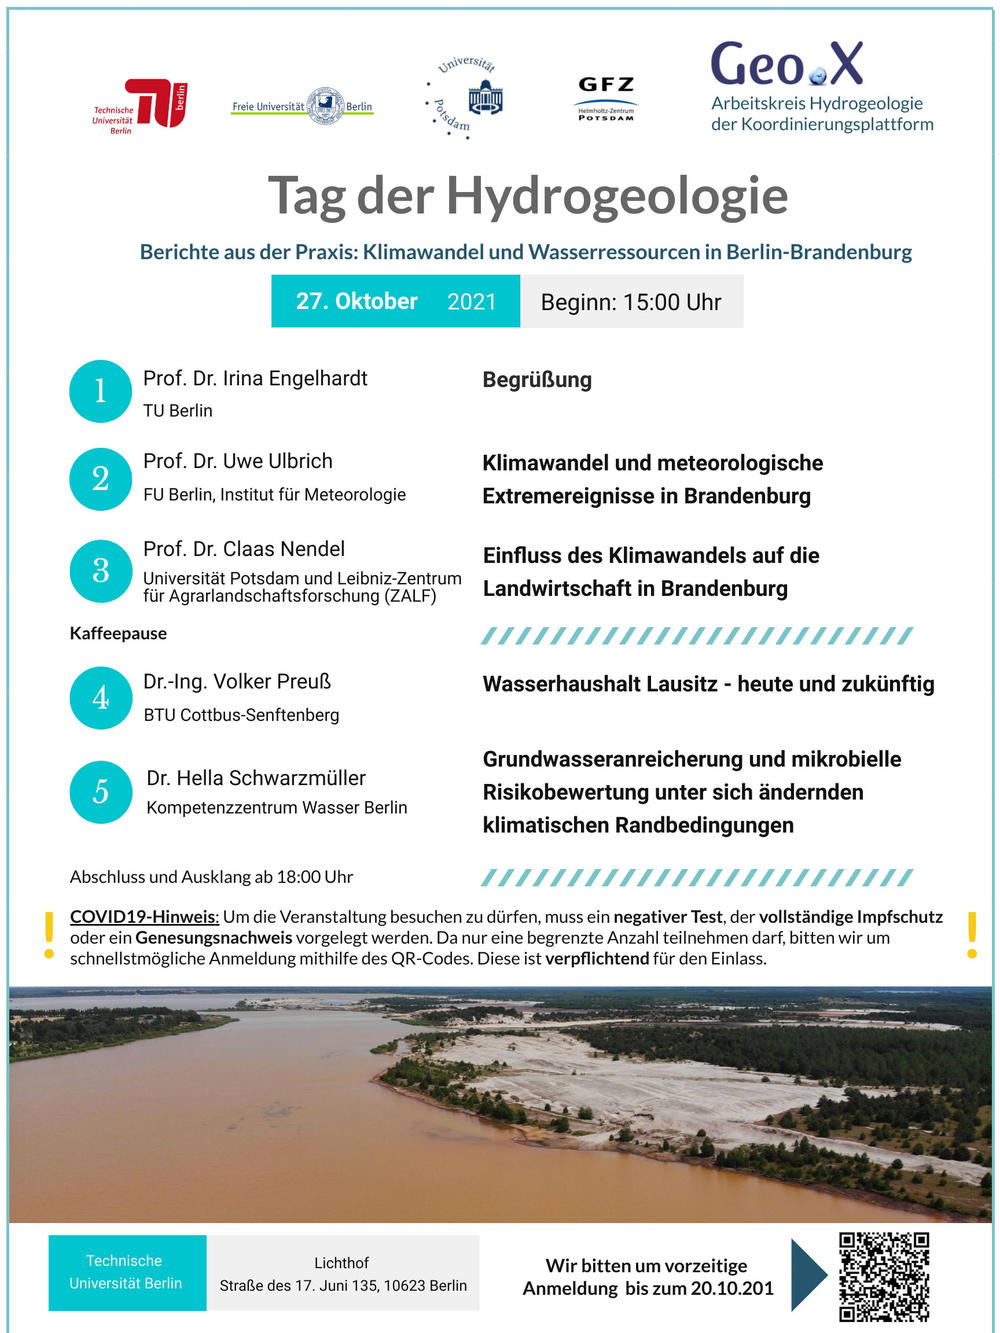 Tag der Hydrogeologie 2021